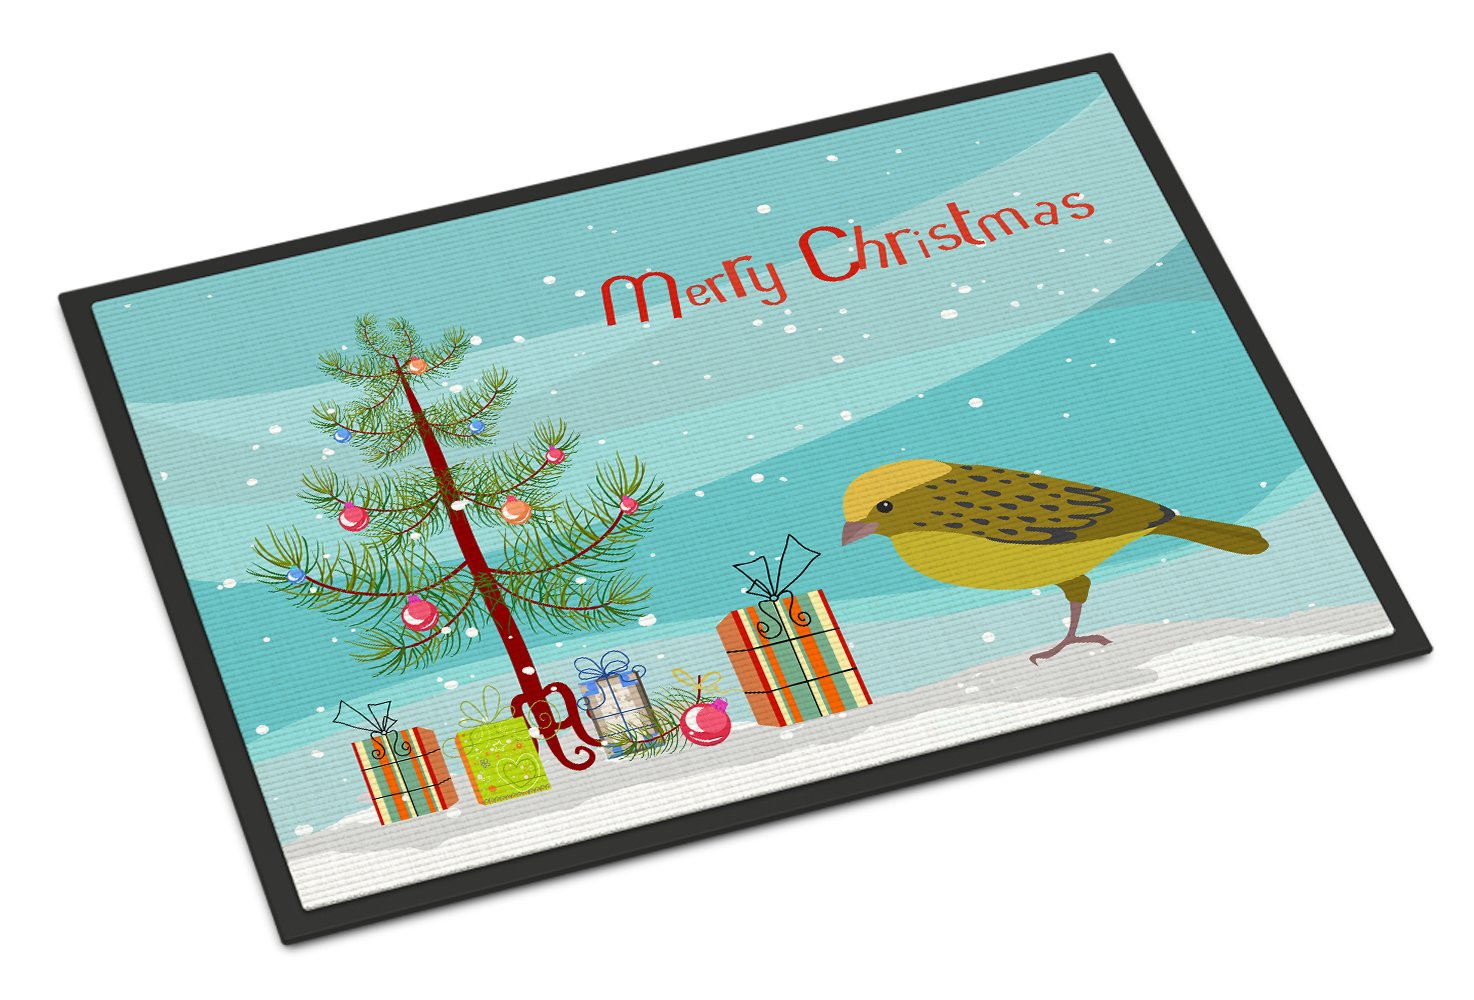 Lizard Canary Merry Christmas Indoor or Outdoor Mat 24x36 CK4481JMAT by Caroline's Treasures